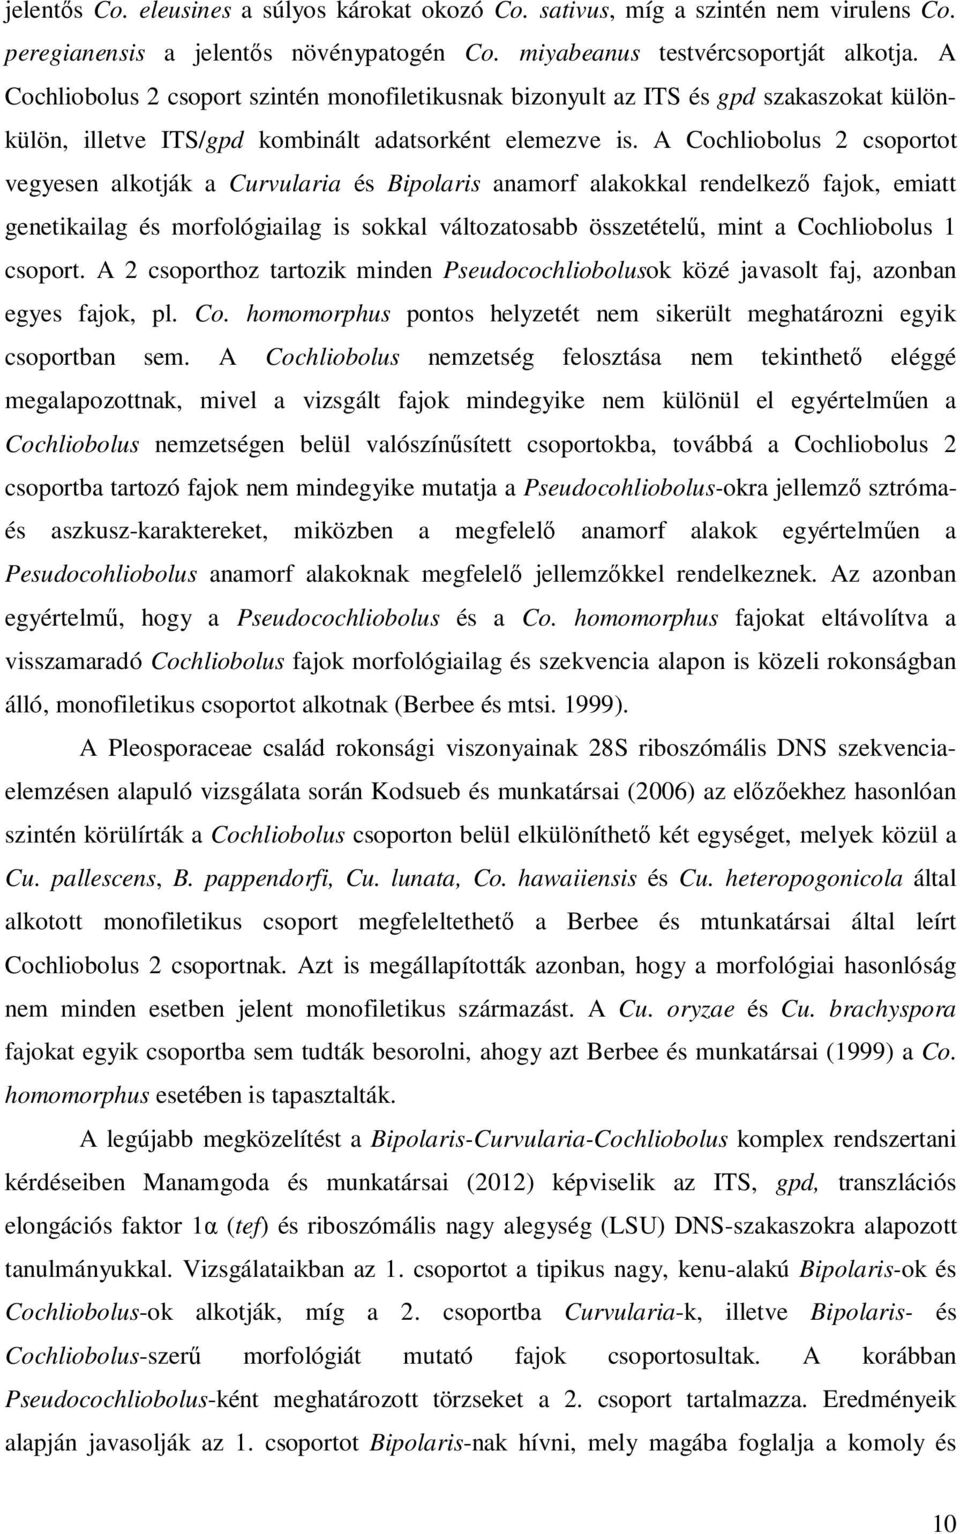 A Cochliobolus 2 csoportot vegyesen alkotják a Curvularia és Bipolaris anamorf alakokkal rendelkező fajok, emiatt genetikailag és morfológiailag is sokkal változatosabb összetételű, mint a